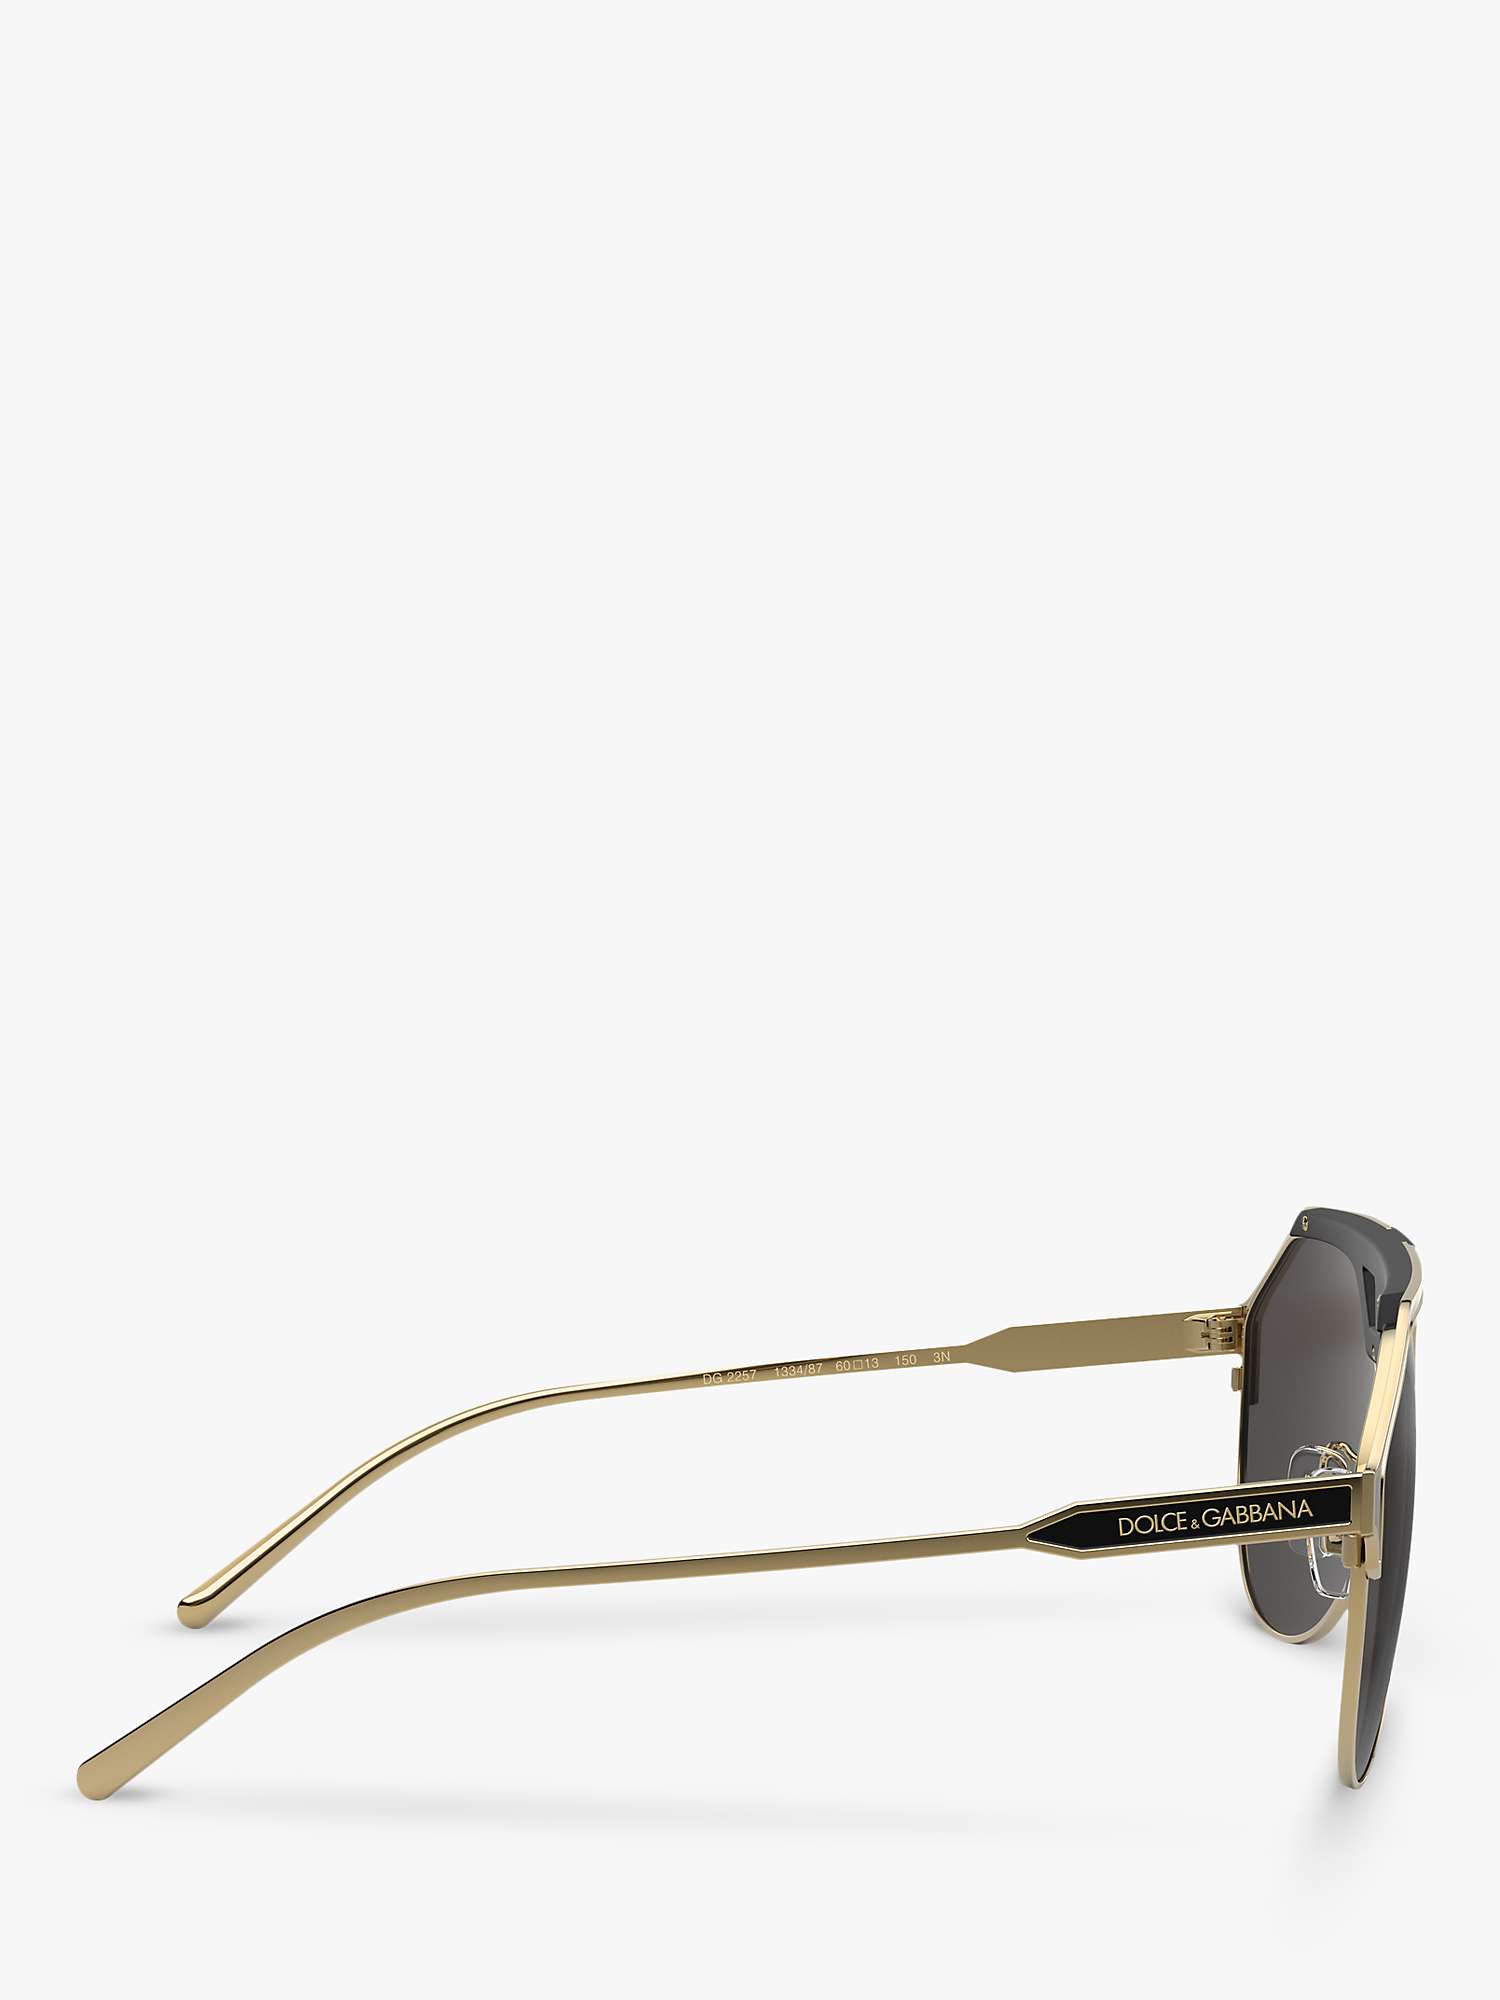 Buy Dolce & Gabbana DG2257 Men's Aviator Sunglasses, Black Online at johnlewis.com